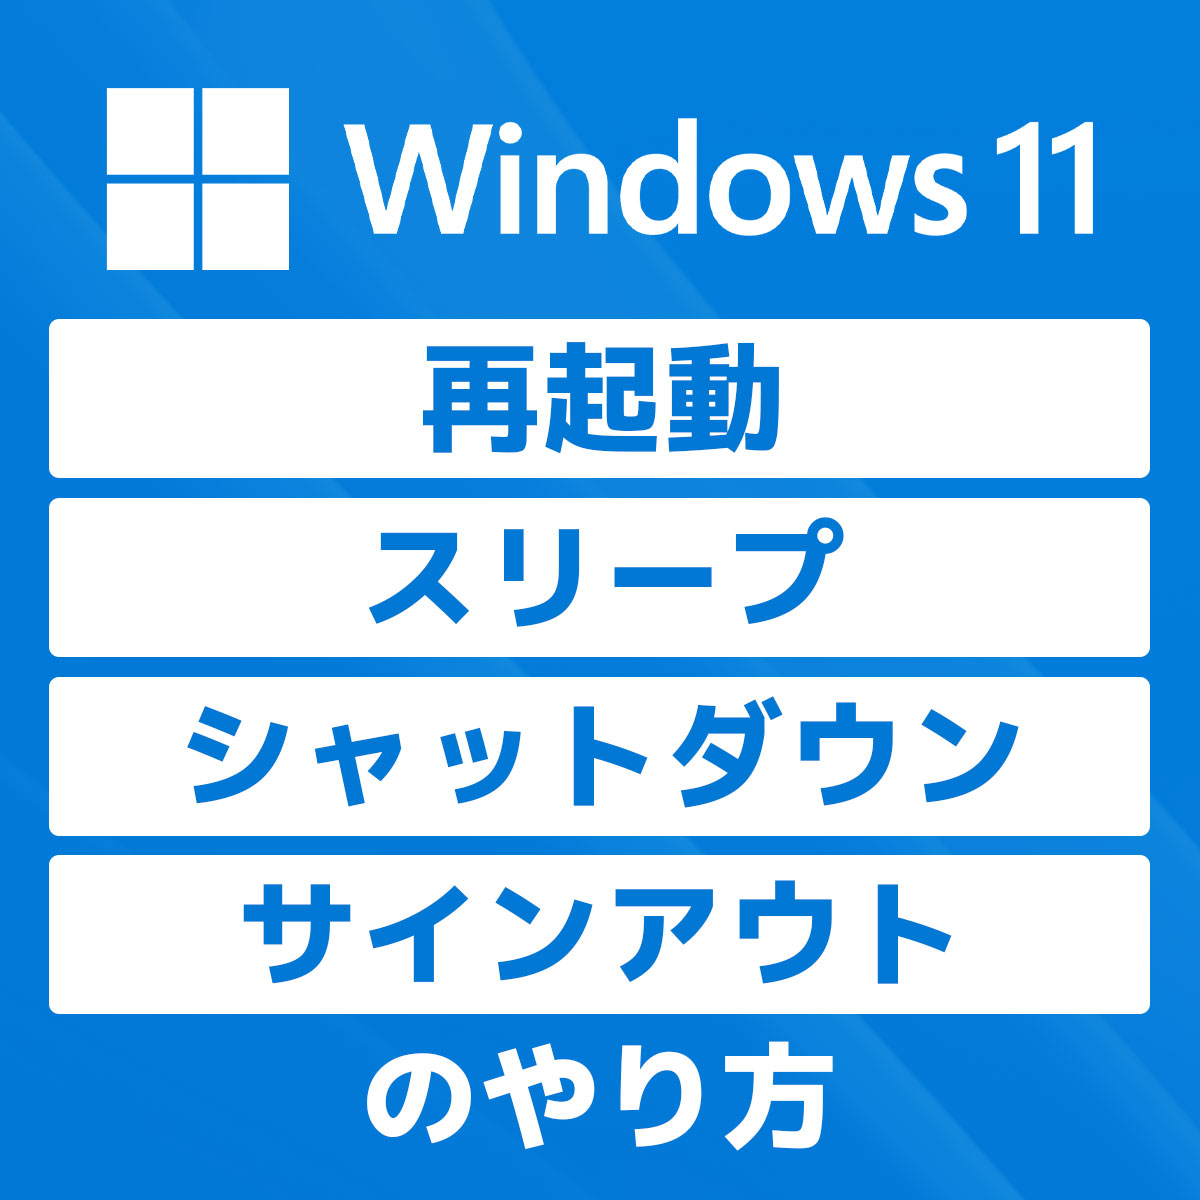 「【Windows 11】再起動、スリープ、シャットダウン、サインアウトのやり方」カバー画像